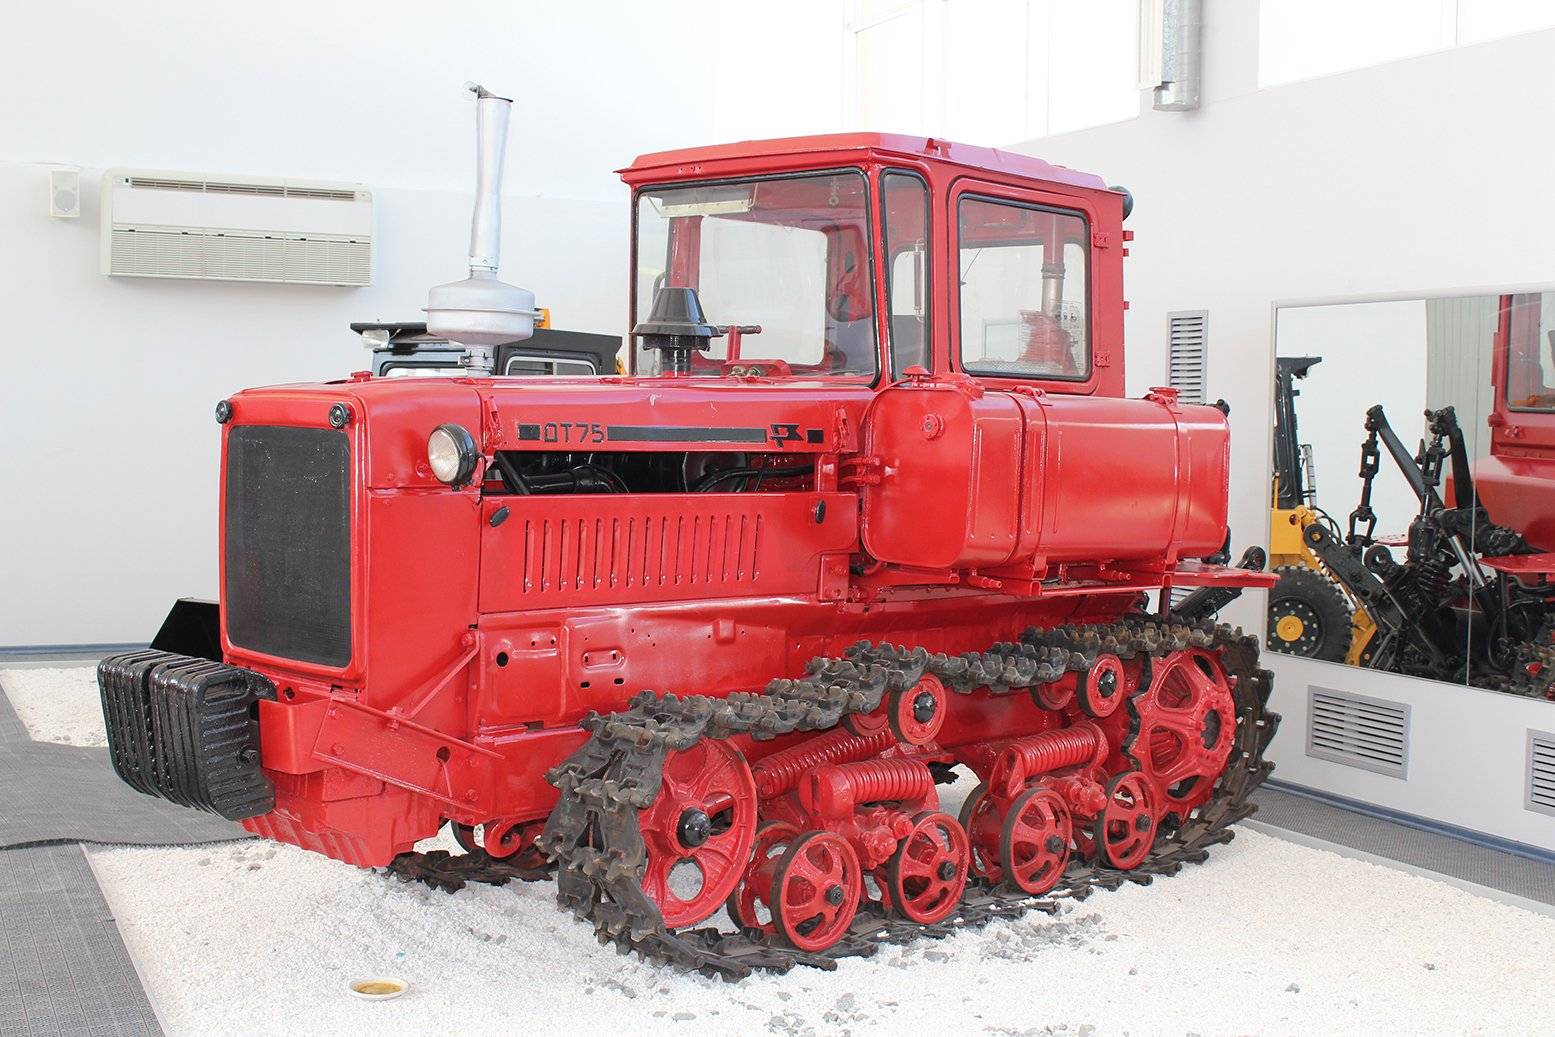 Технические характеристики трактора дт-75, дт-75м: вес, размеры